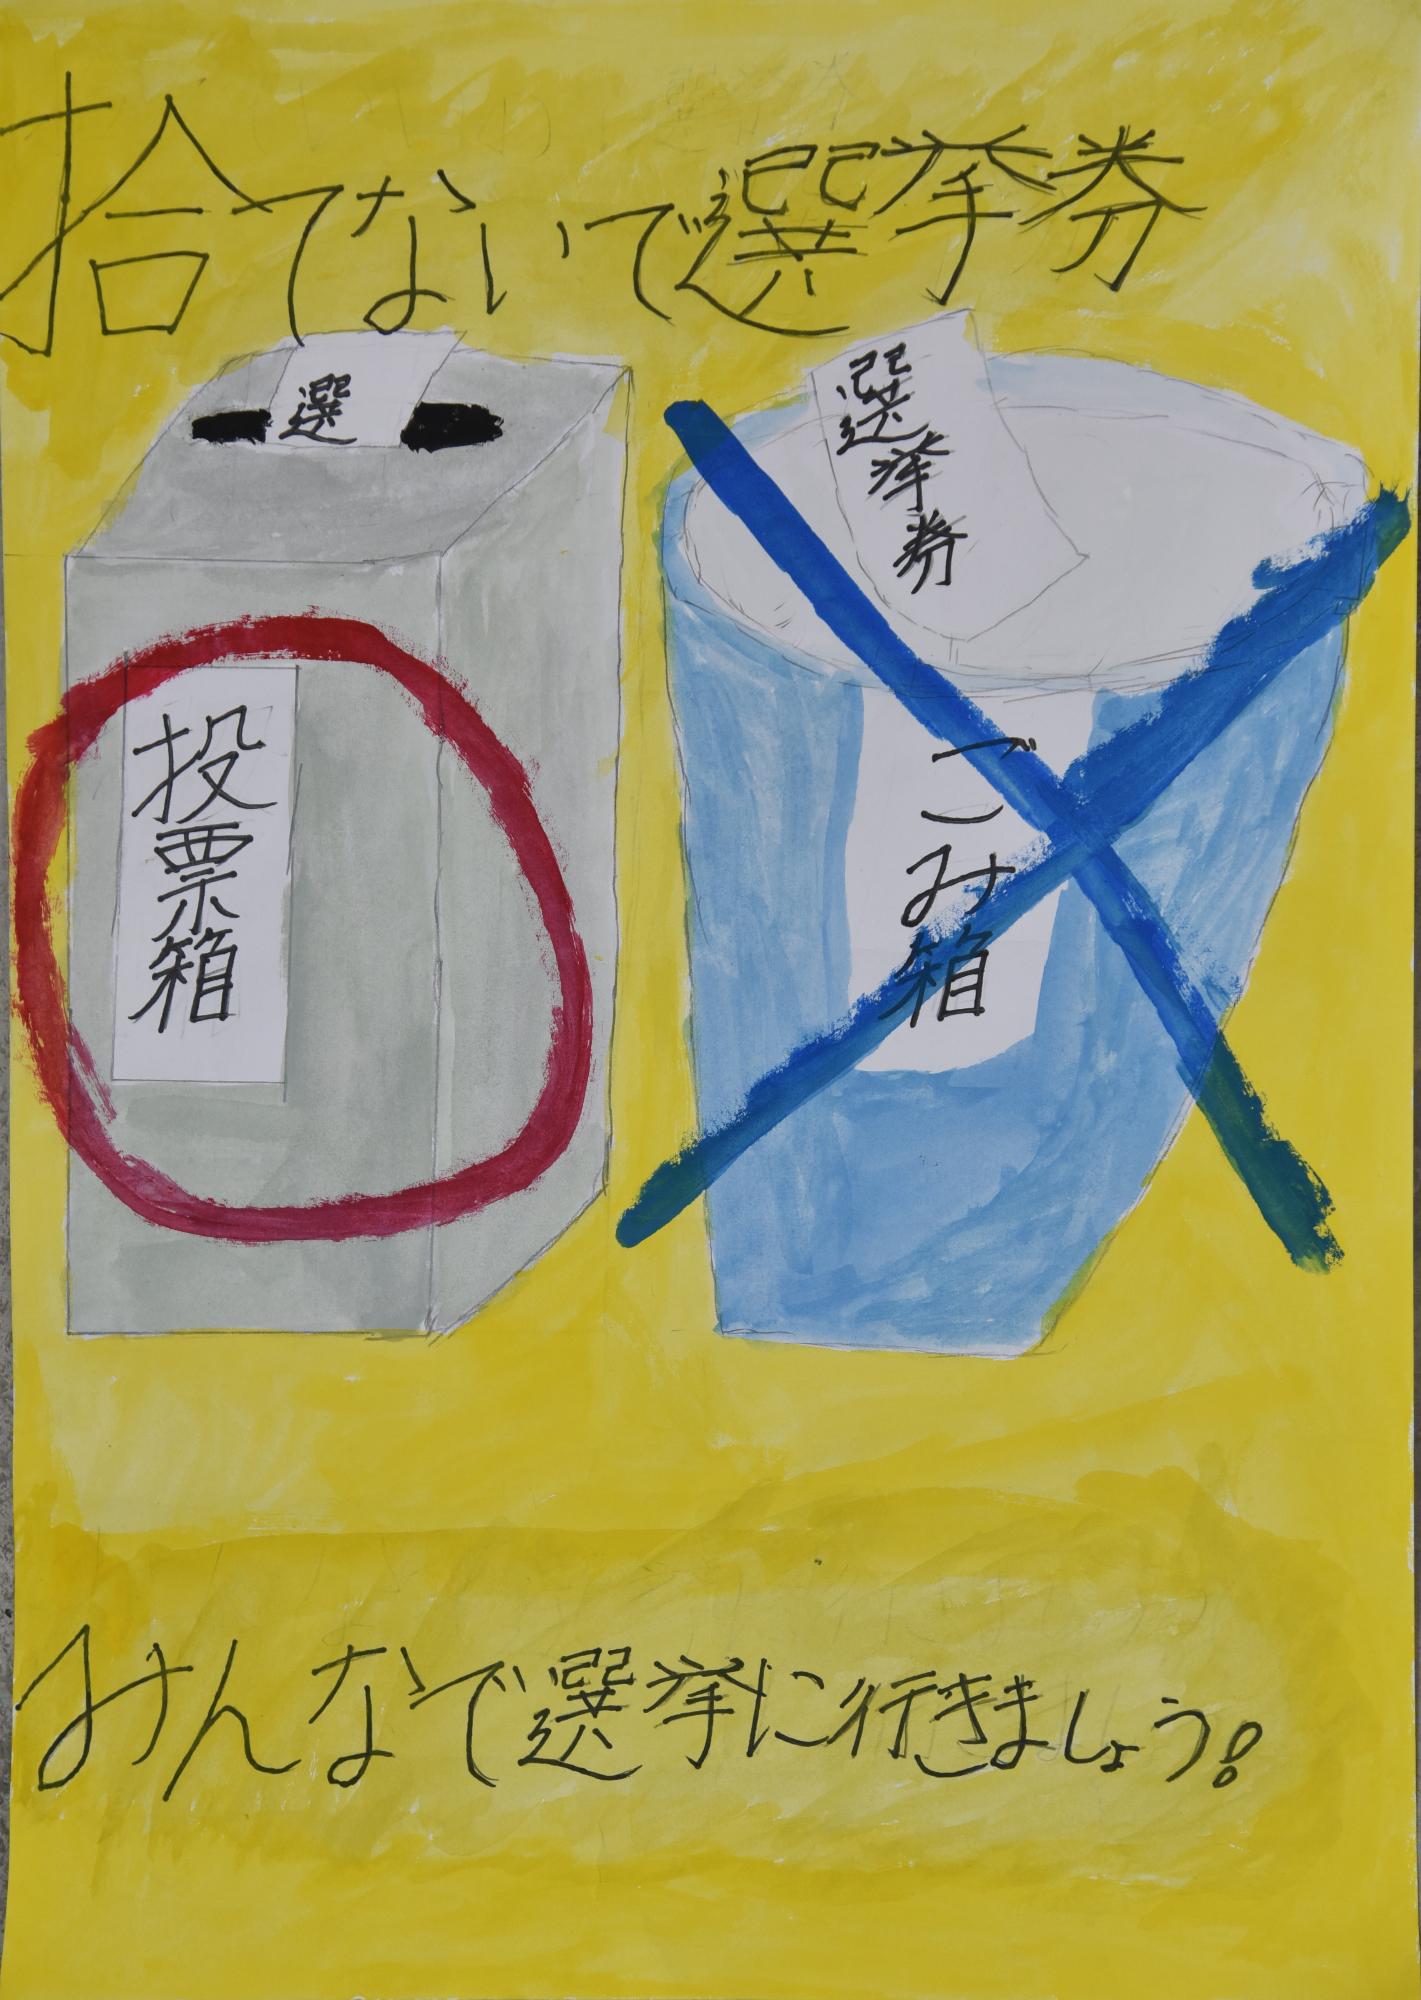 「捨てないで選挙権みんなで選挙に行きましょう」黄色い背景に投票箱に赤い丸、ゴミ箱に青いバツのポスター